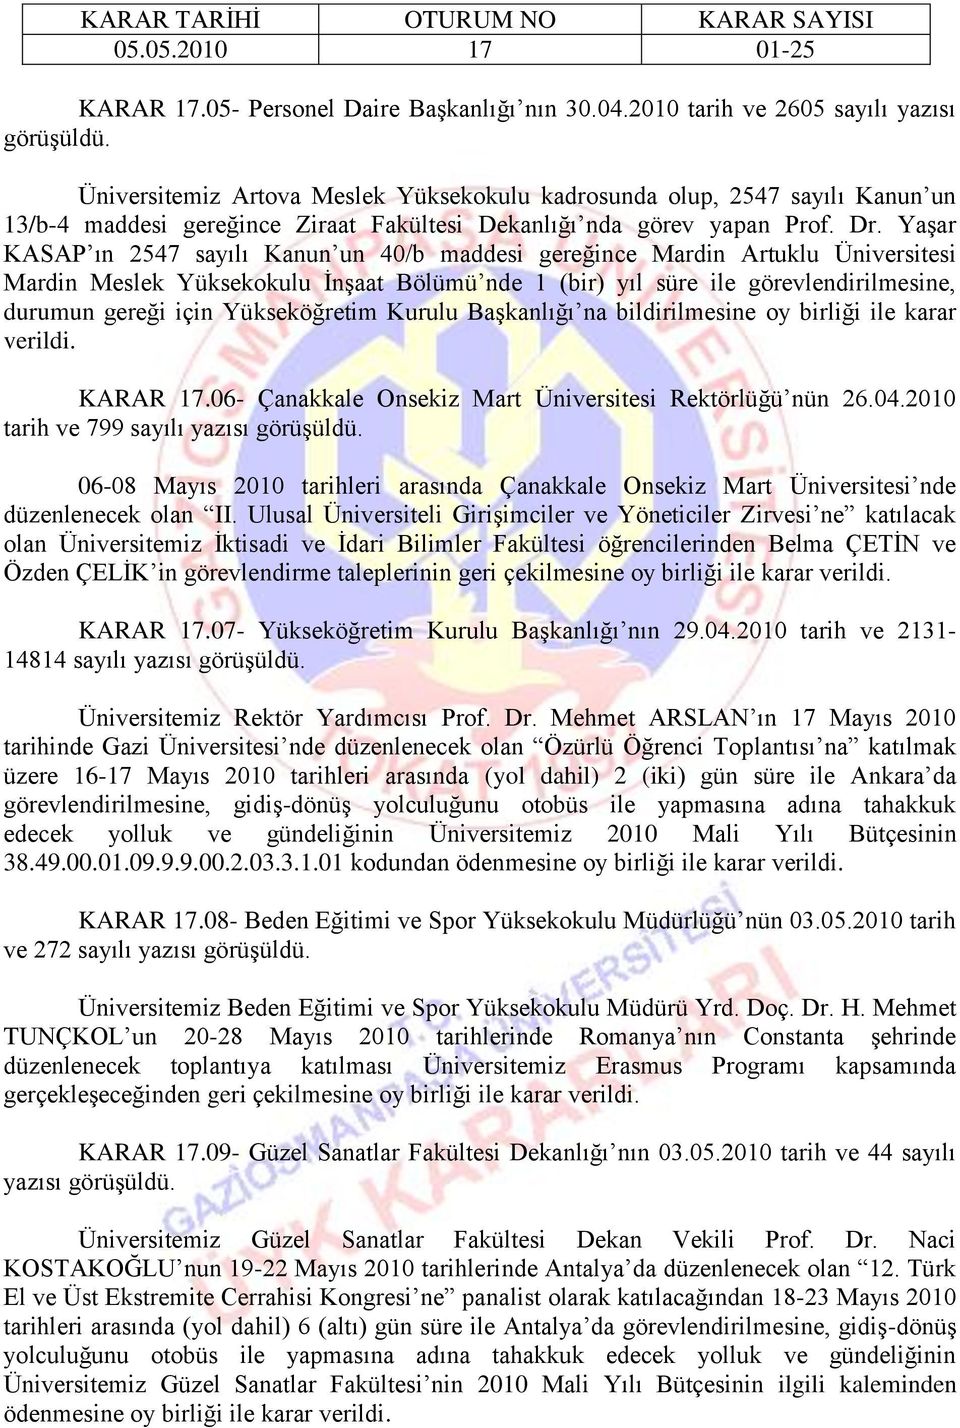 YaĢar KASAP ın 2547 sayılı Kanun un 40/b maddesi gereğince Mardin Artuklu Üniversitesi Mardin Meslek Yüksekokulu ĠnĢaat Bölümü nde 1 (bir) yıl süre ile görevlendirilmesine, durumun gereği için